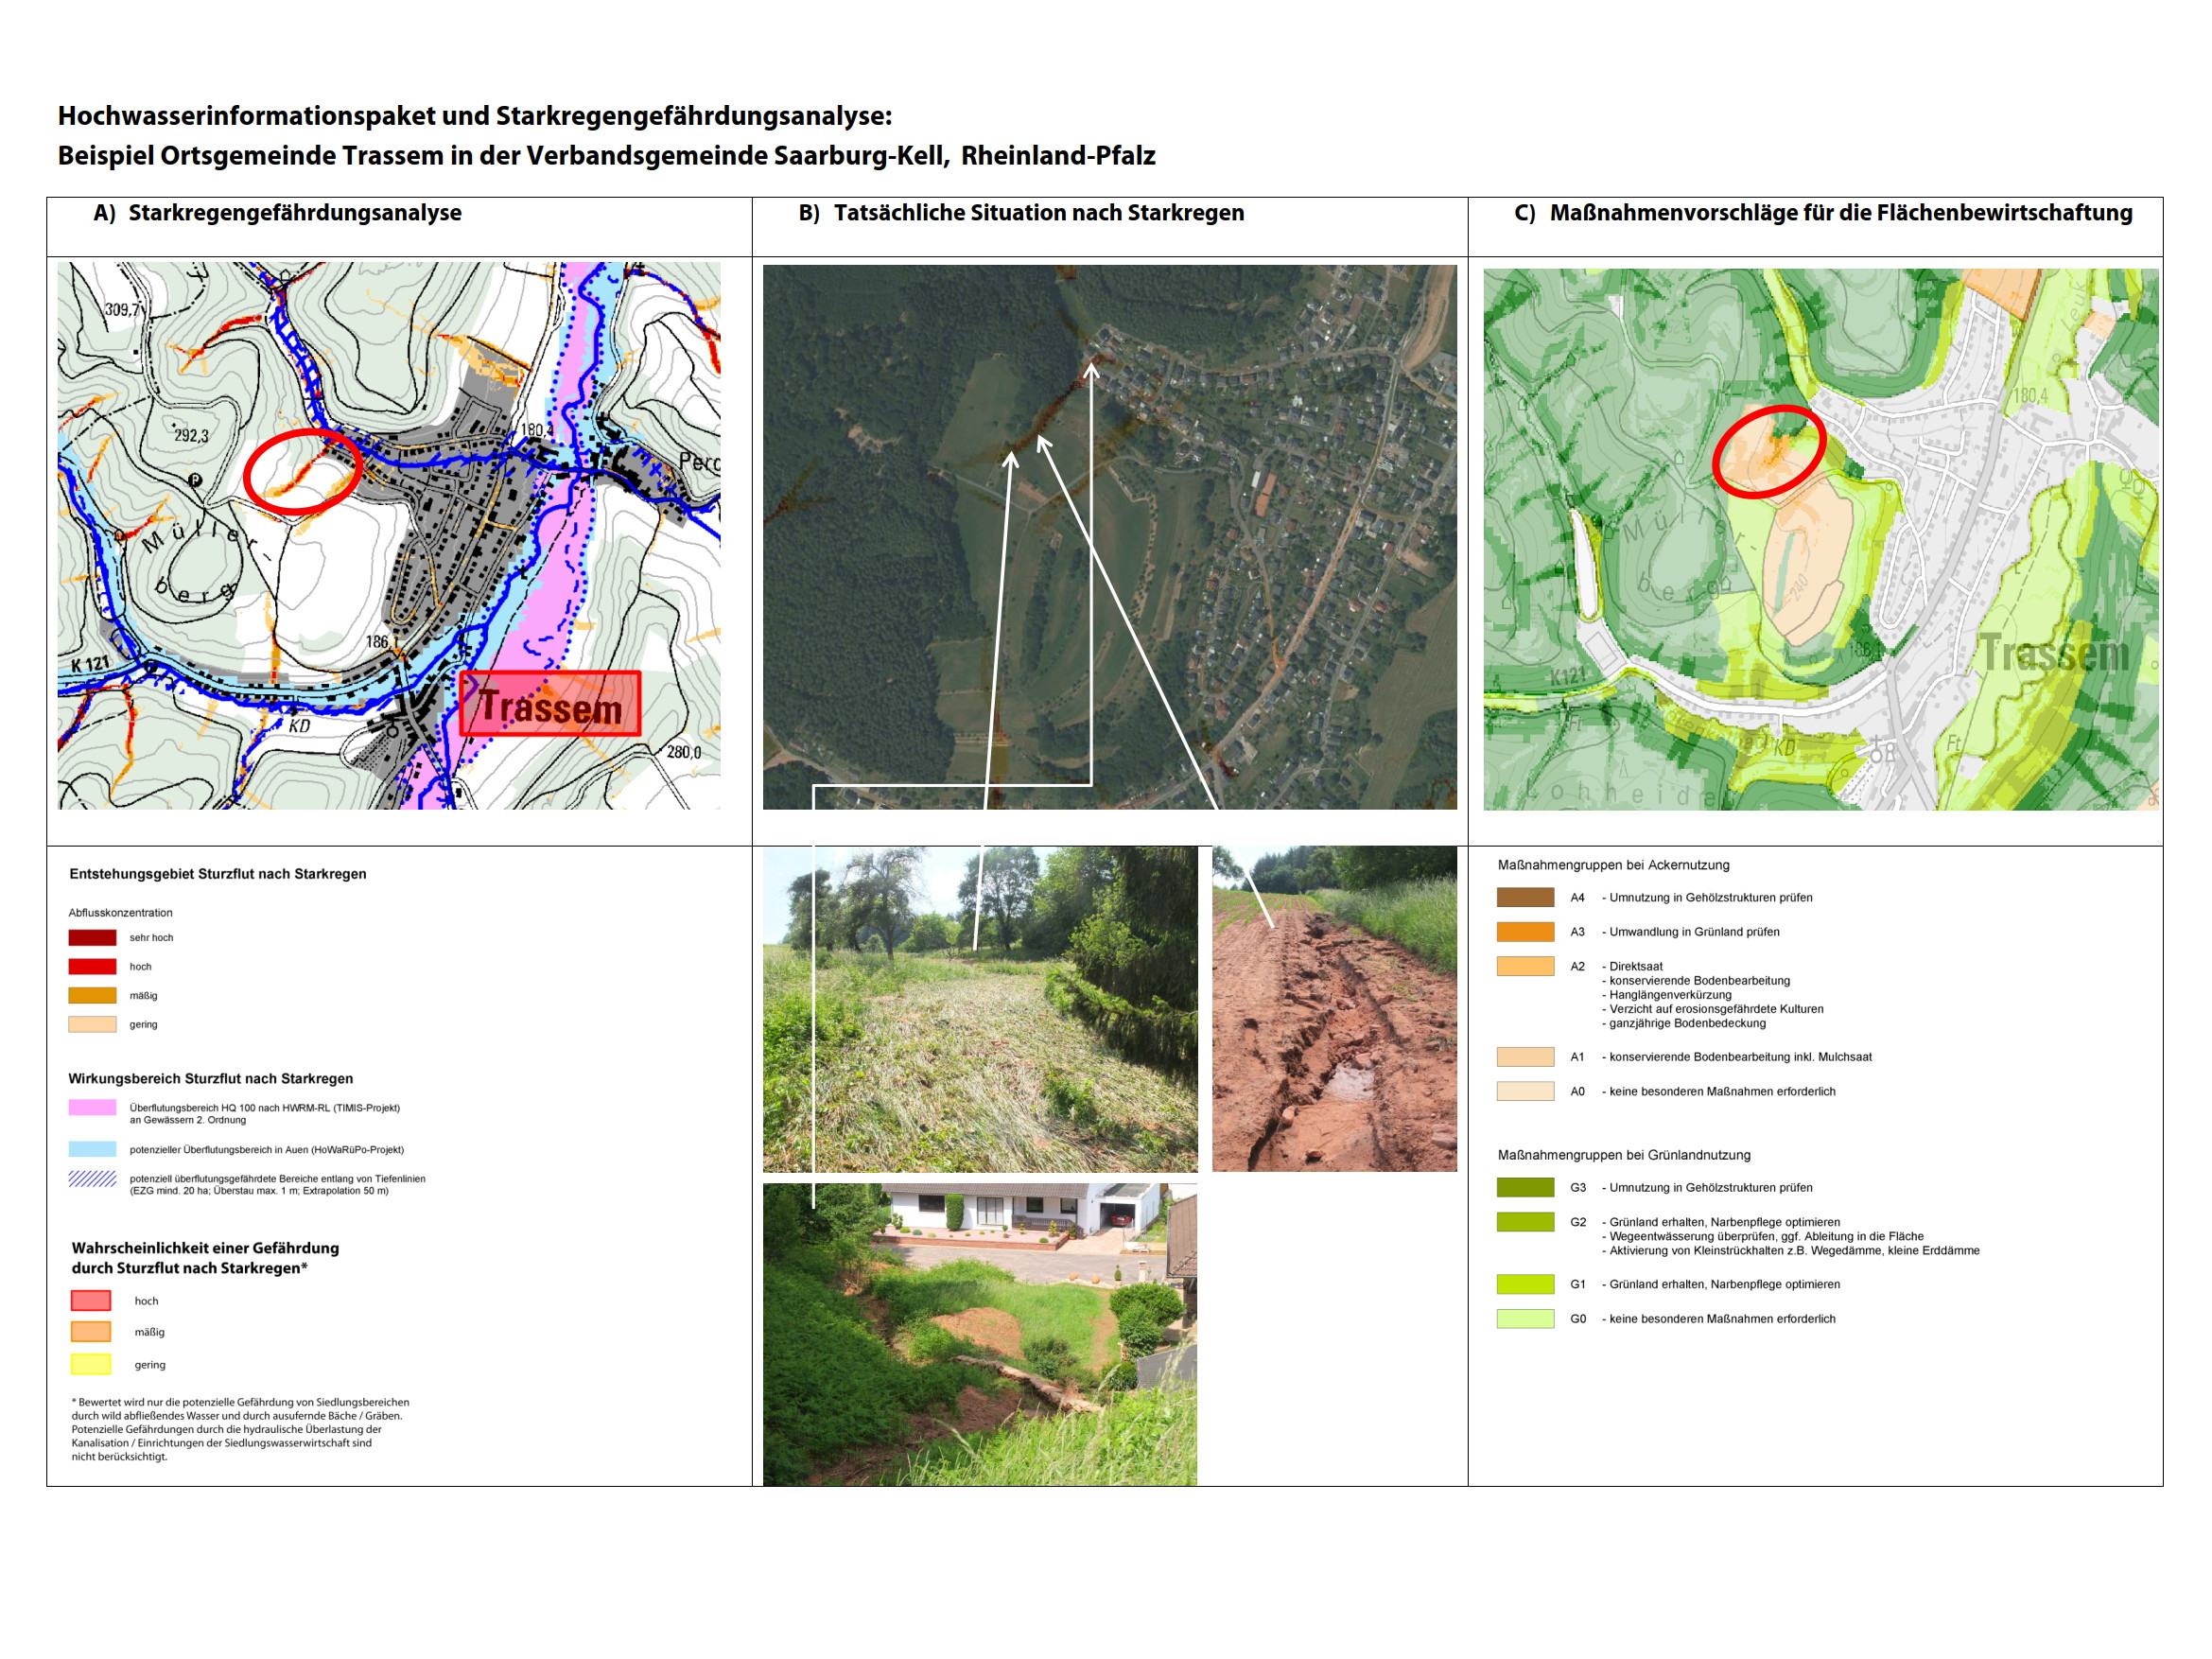 Anhand von drei Karten und Fotos sind Starkregengefährdungsanalyse, die Tatsächliche Situation nach Starkregen und Maßnahmenvorschläge für die Ortsgemeinde Trassem in der Verbandsgemeinde Saarburg-Kell dargestellt.